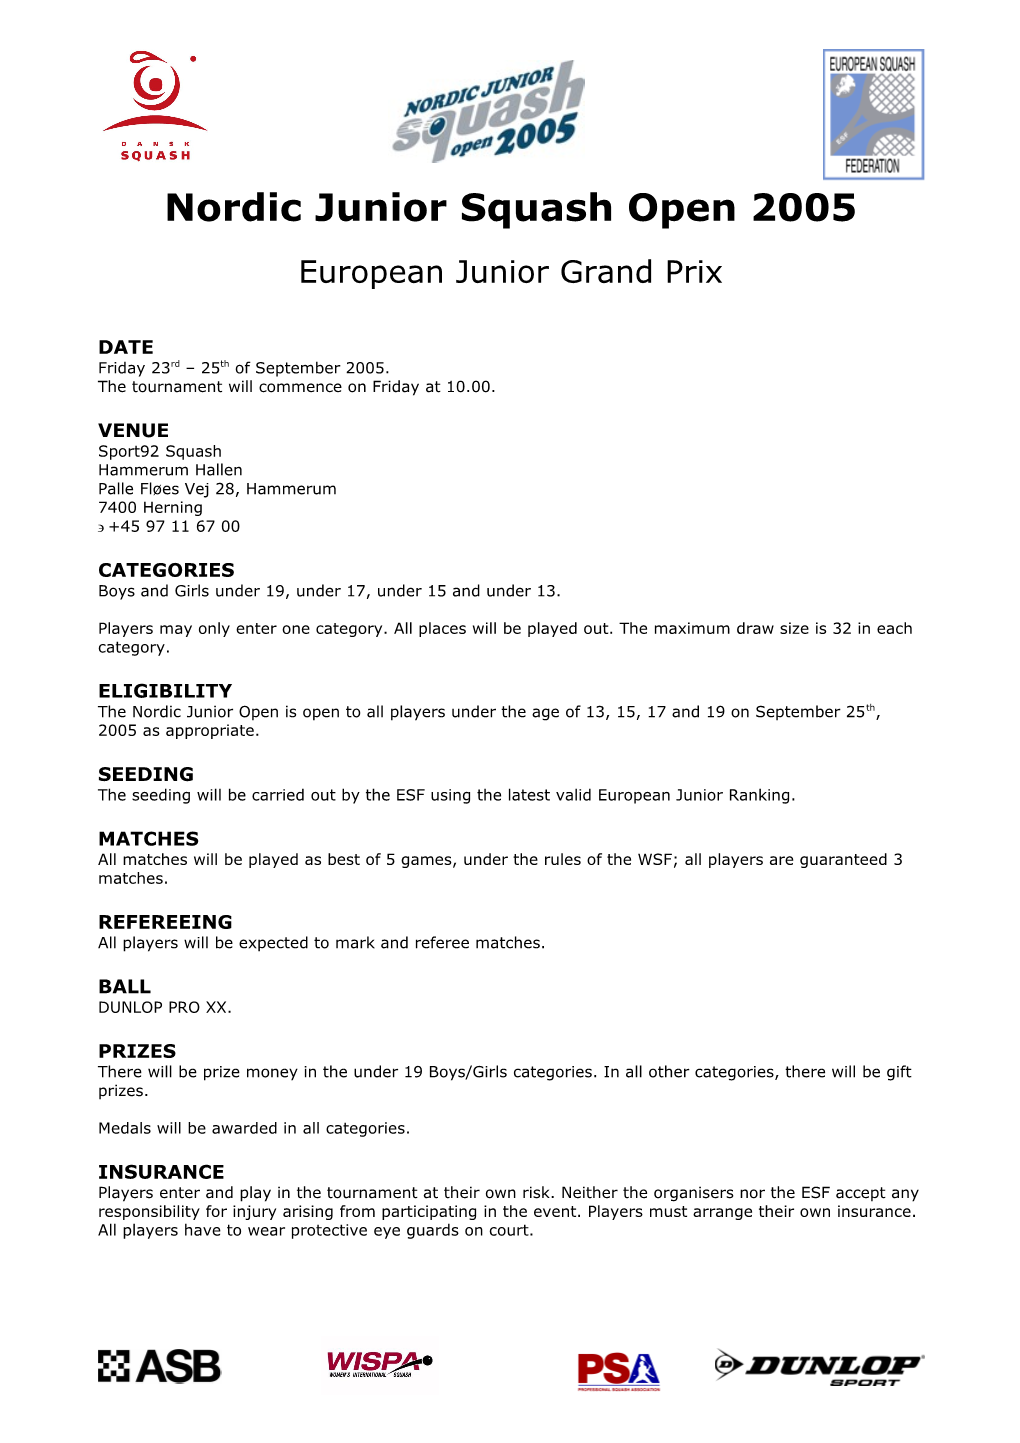 Nordic Junior Squash Open 2002